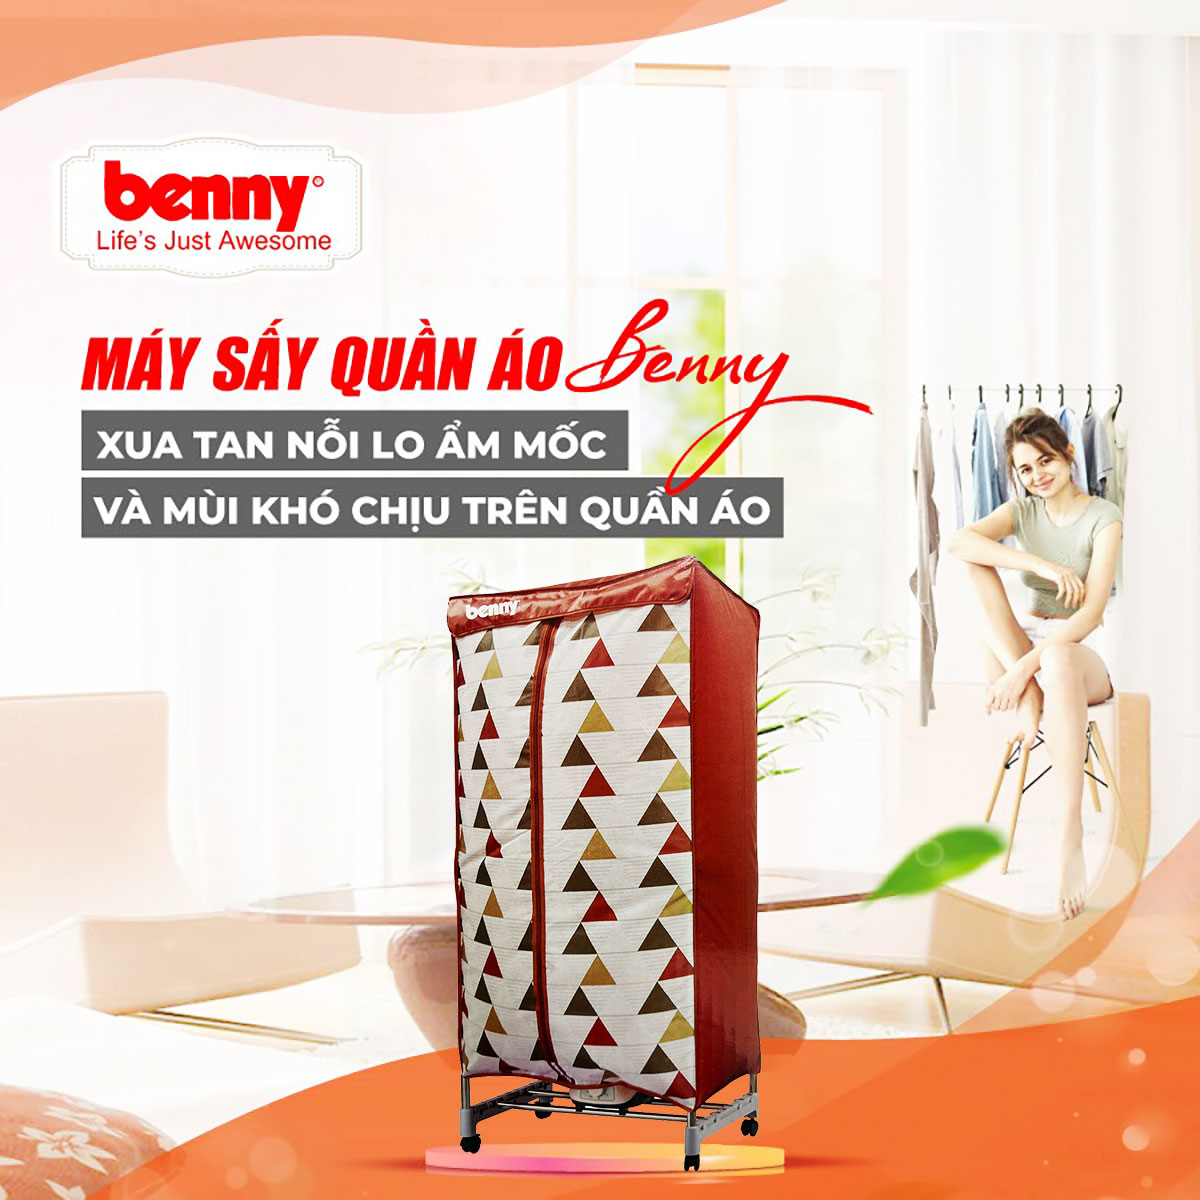 Máy sấy quần áo Benny BD-03 giúp xua tan nỗi lo ẩm mốc và mùi khó chịu trên quần áo